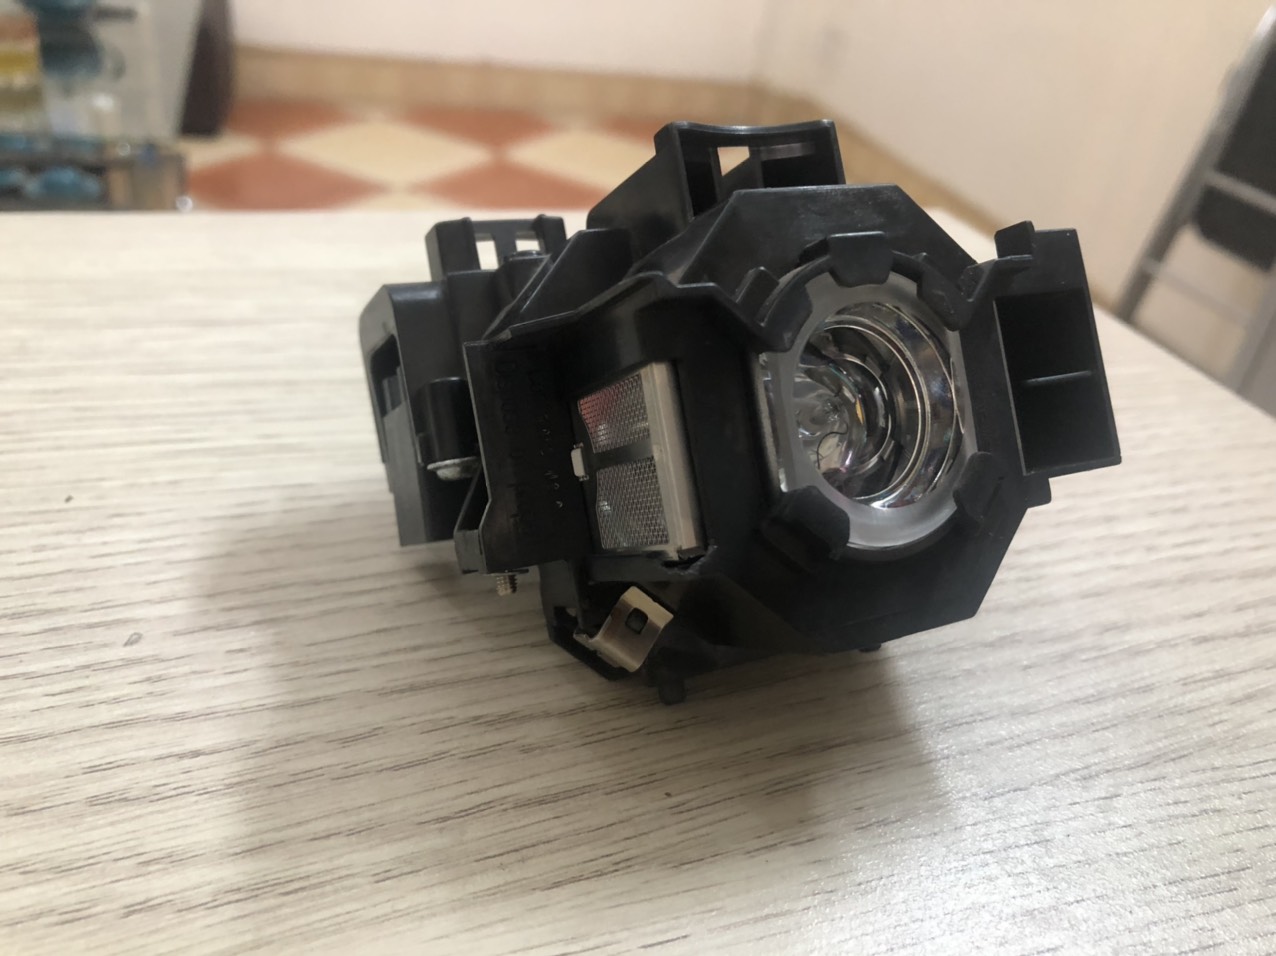 Bóng đèn máy chiếu Epson EB-X41